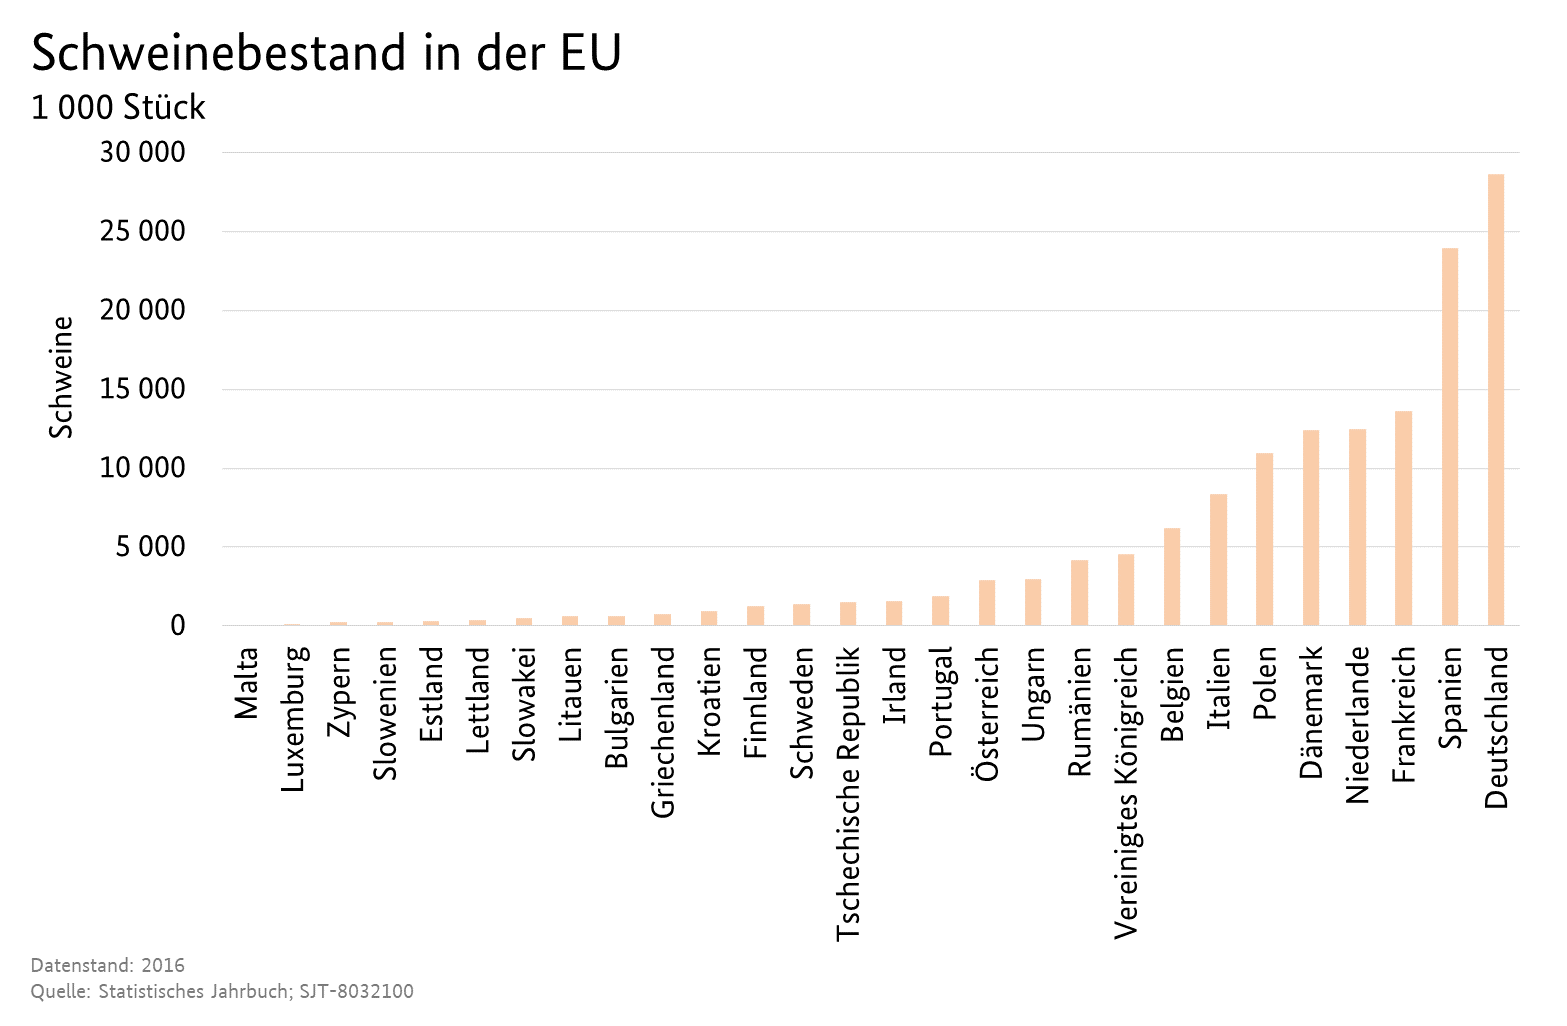 Säulendiagramm: Schweinebestand aller Mitgliedstaaten der EU. Datenquelle ist die Tabelle: SJT-8032100